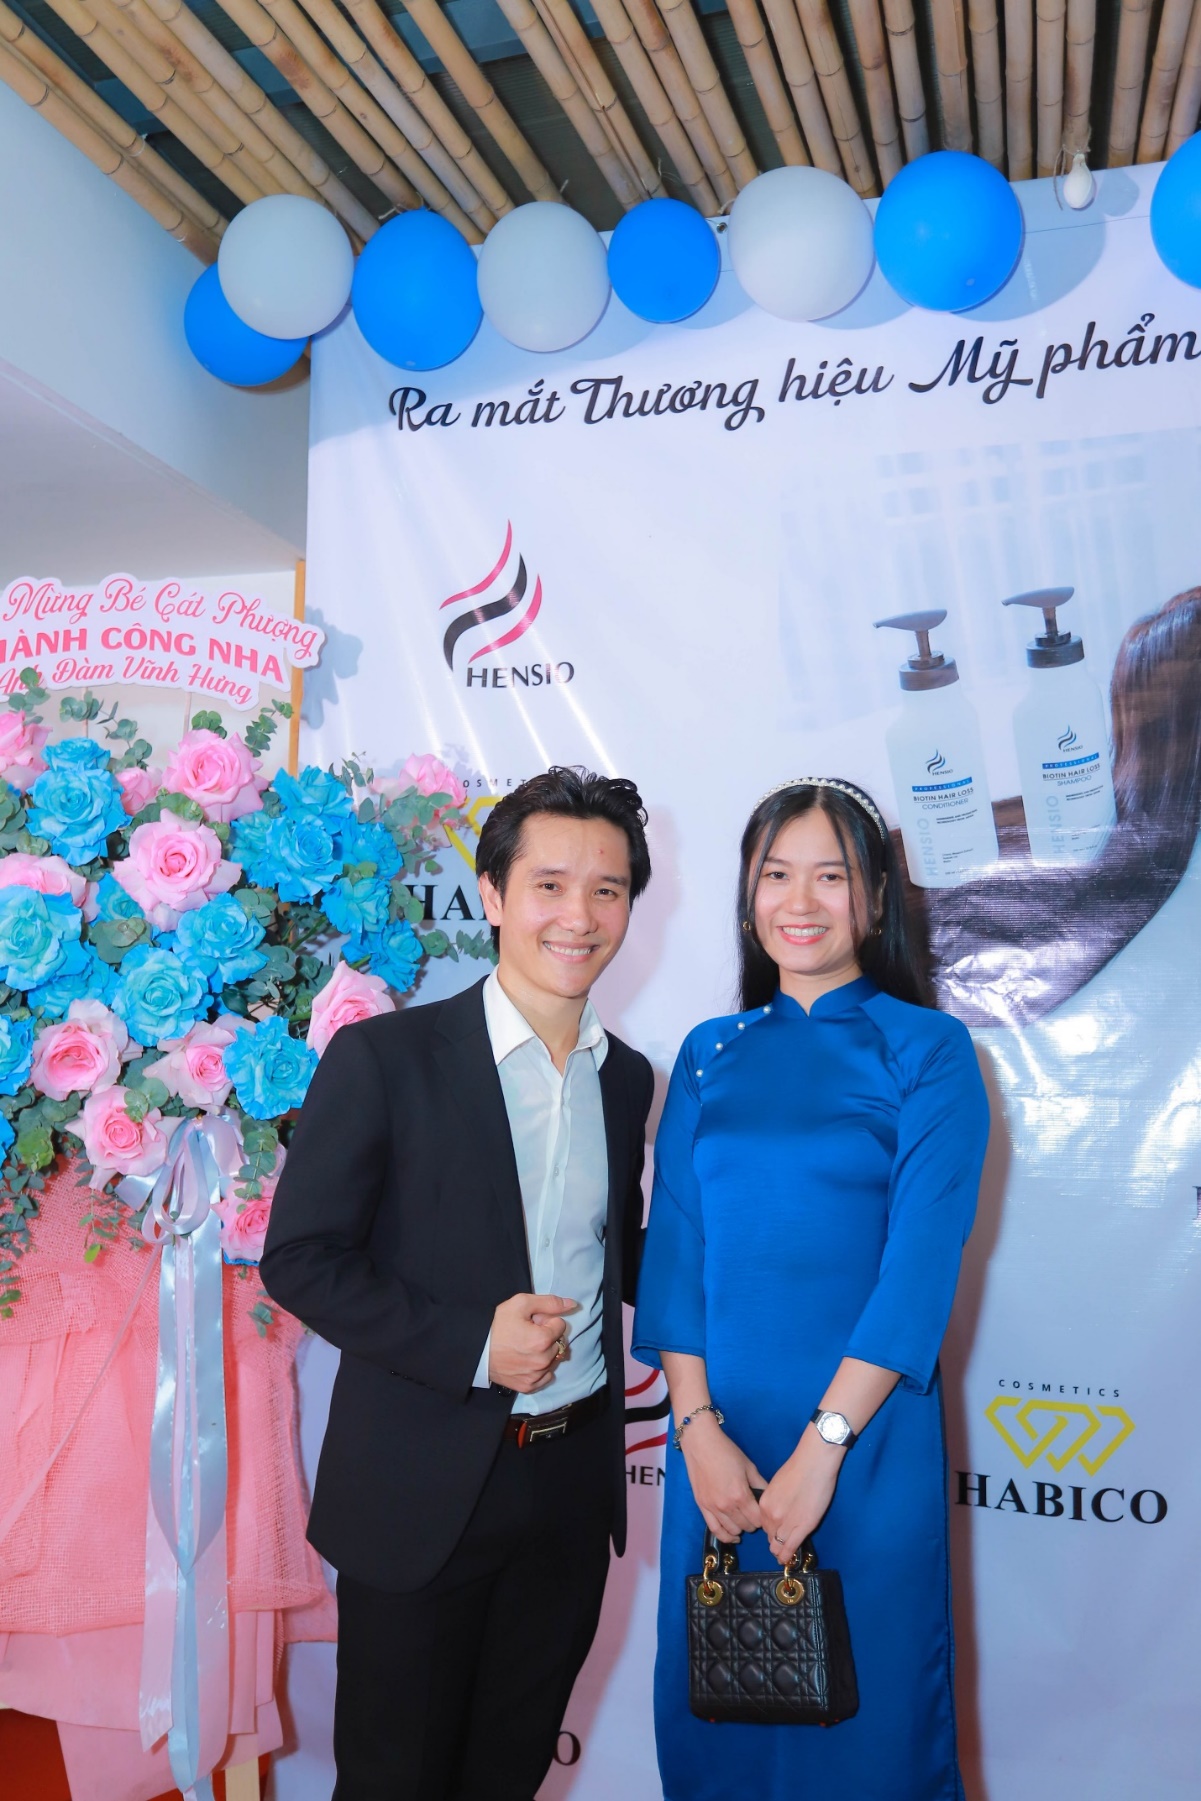 Bi Roen – Hỗ trợ và đào tạo về ngành tóc cho chủ salon tại Việt Nam - Ảnh 4.